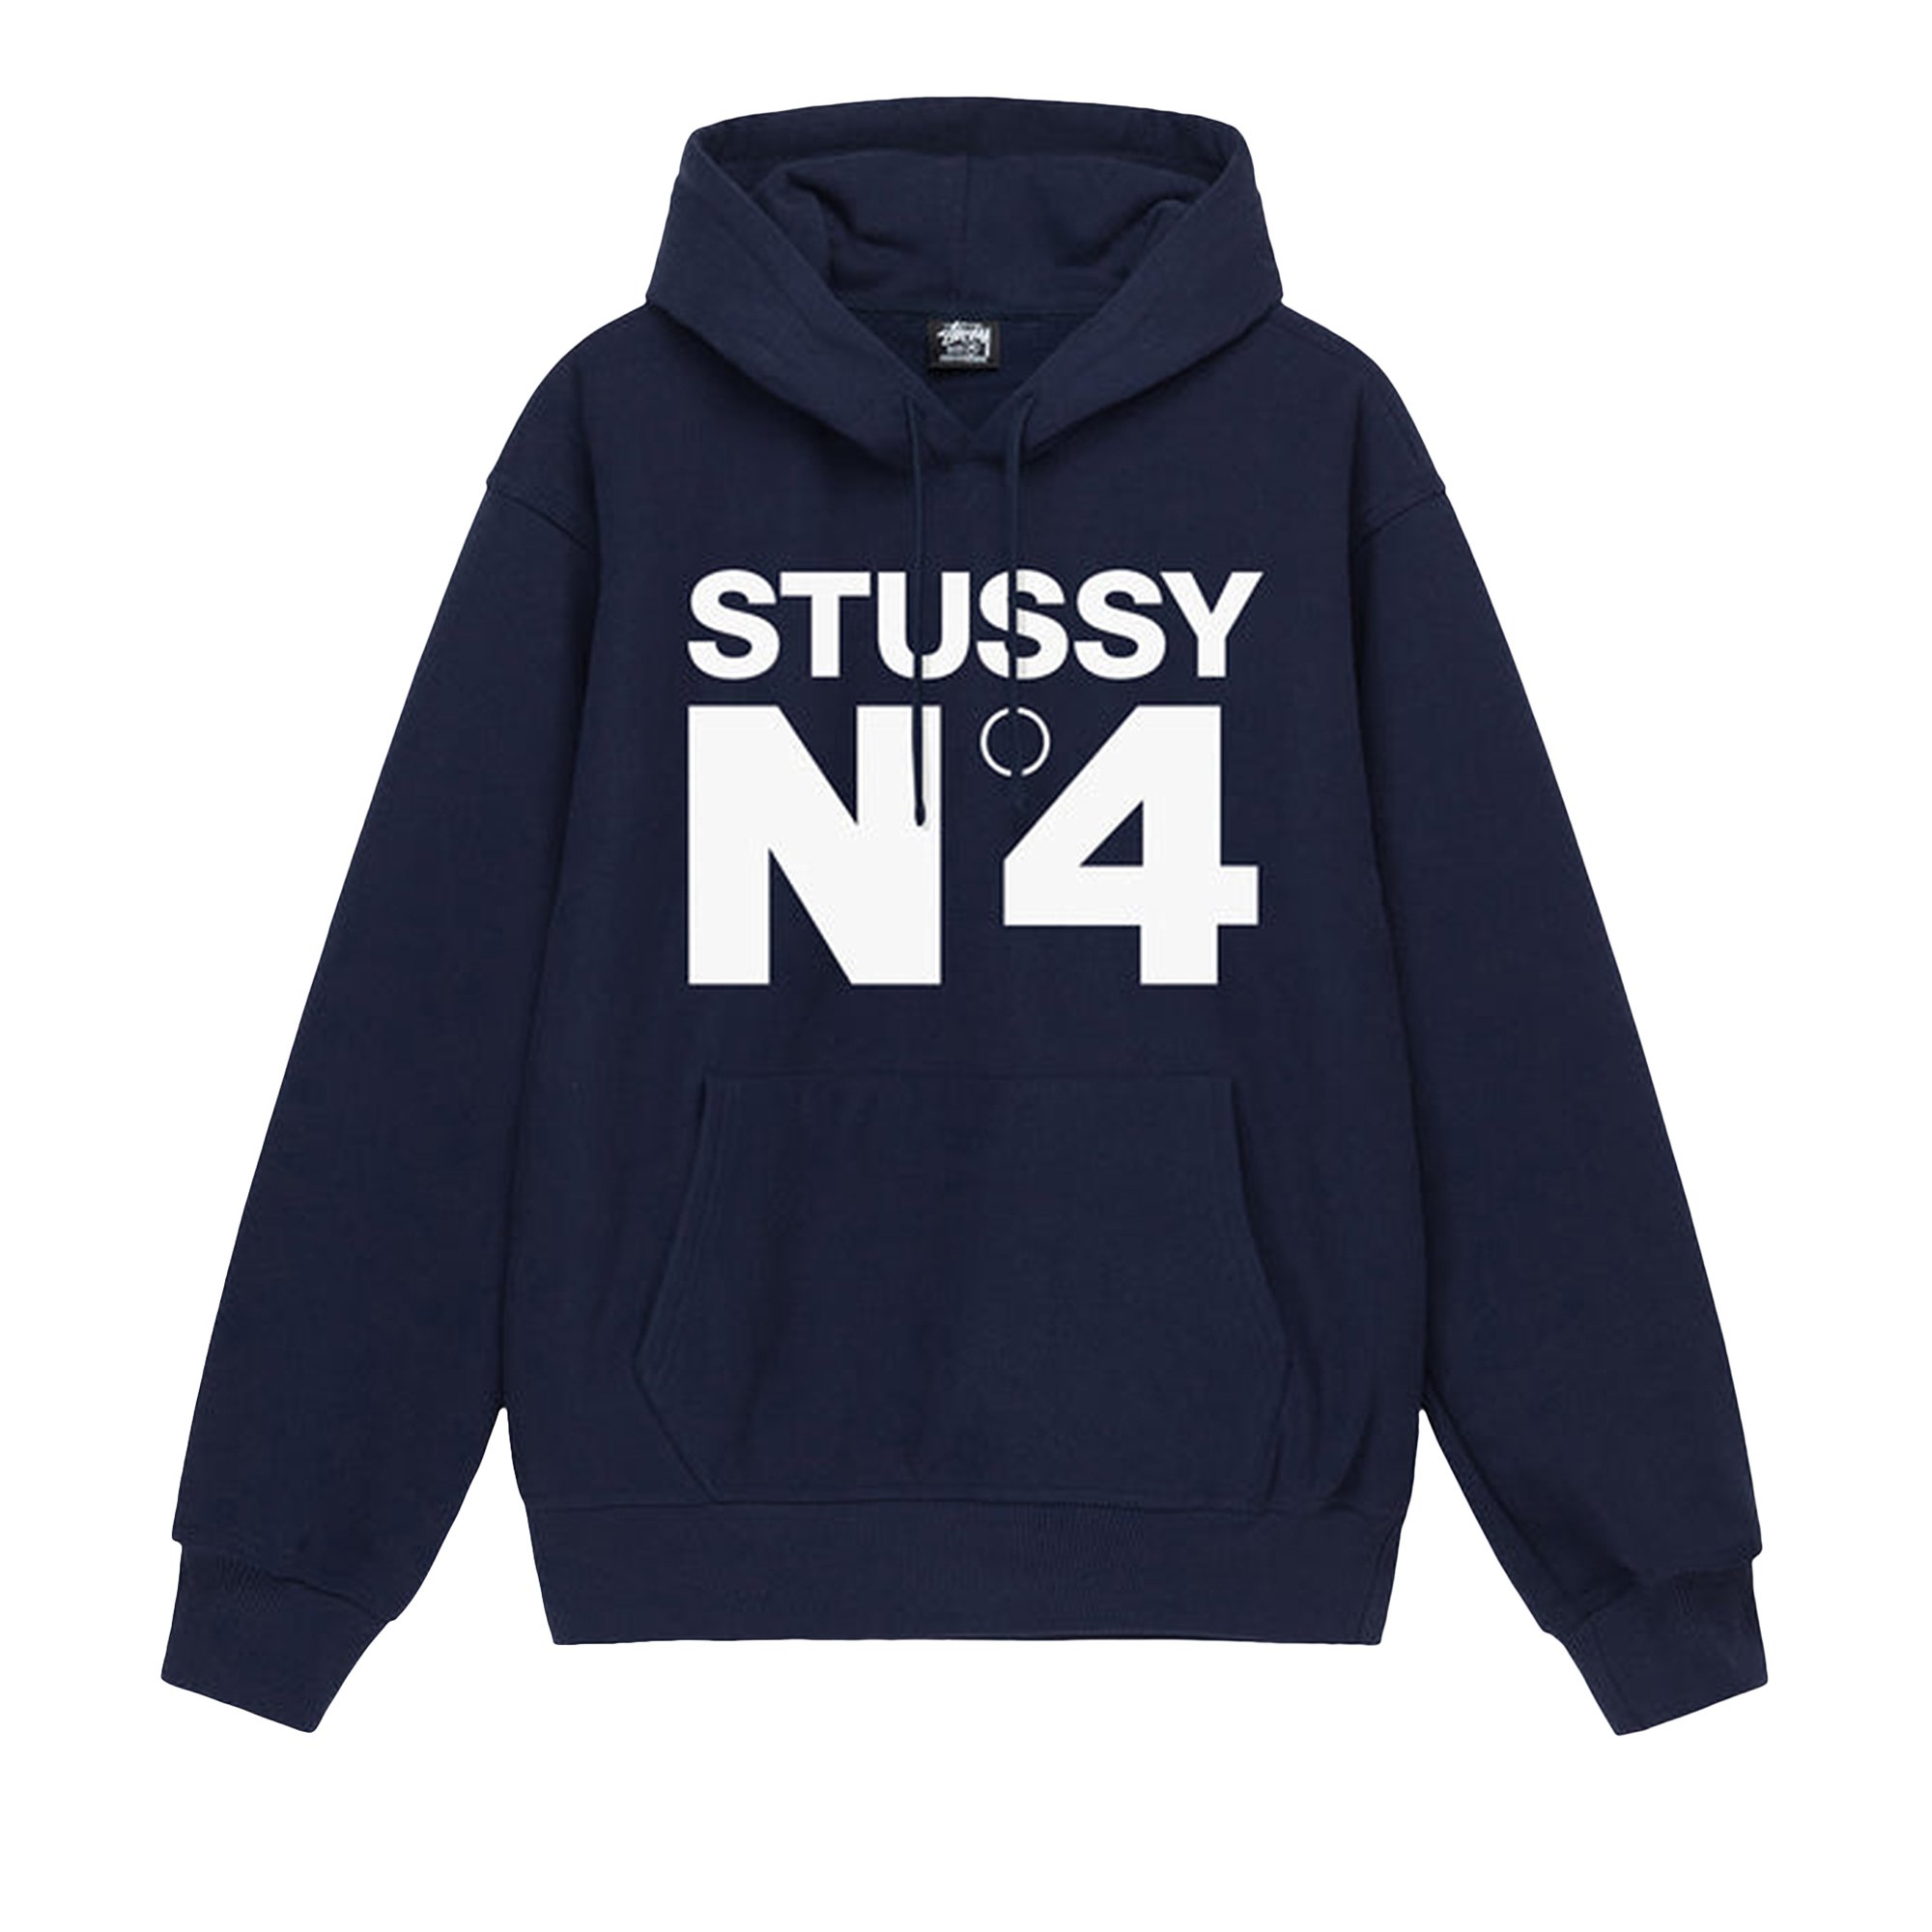 Buy Stussy No.4 Hoodie 'Navy' - 1924901 NAVY | GOAT